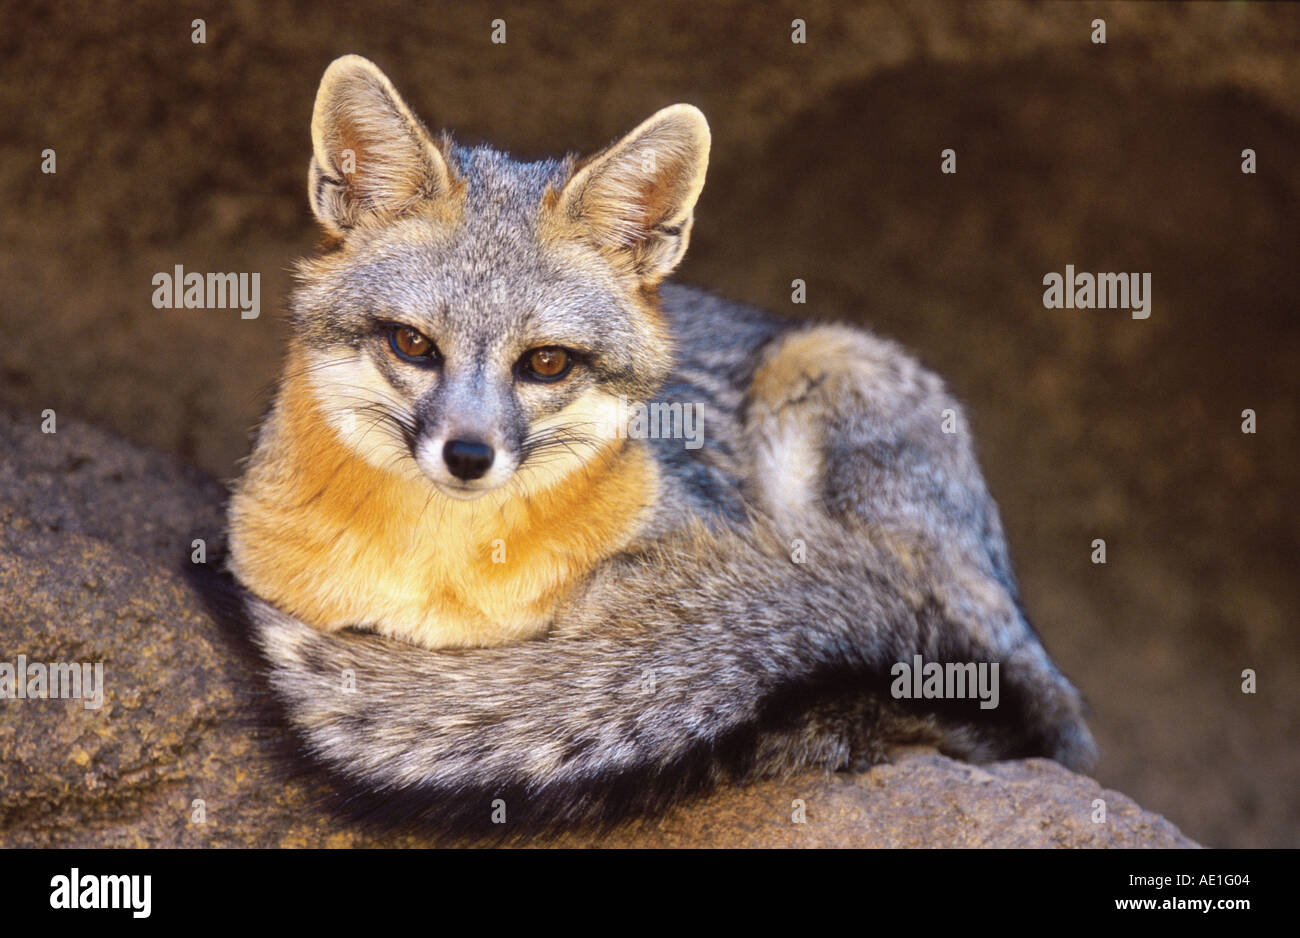 Festland gray Fox, nordamerikanischen grauer Fuchs (Urocyon Cinereoargenteus), Porträt os ein einziges Tier, liegend auf einem Felsen, USA, Arizo Stockfoto